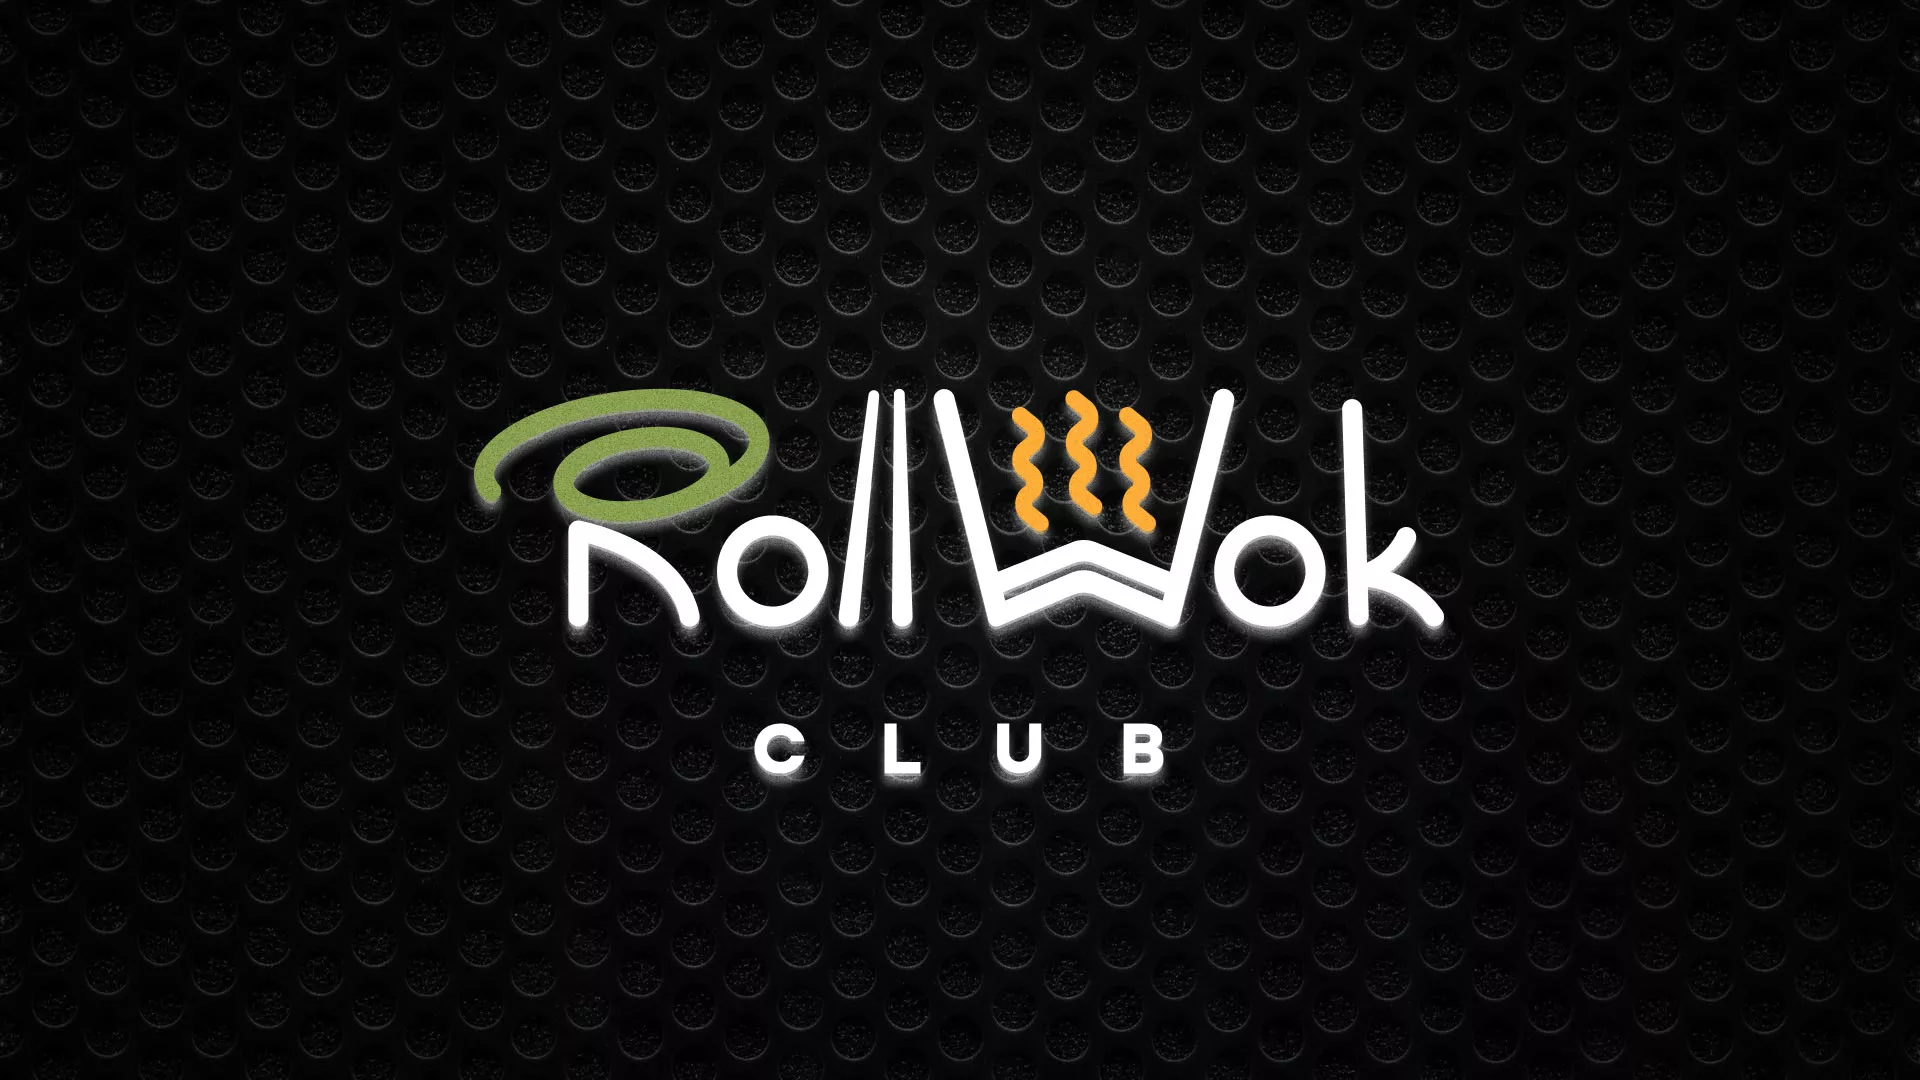 Брендирование торговых точек суши-бара «Roll Wok Club» в Николаевске-на-Амуре